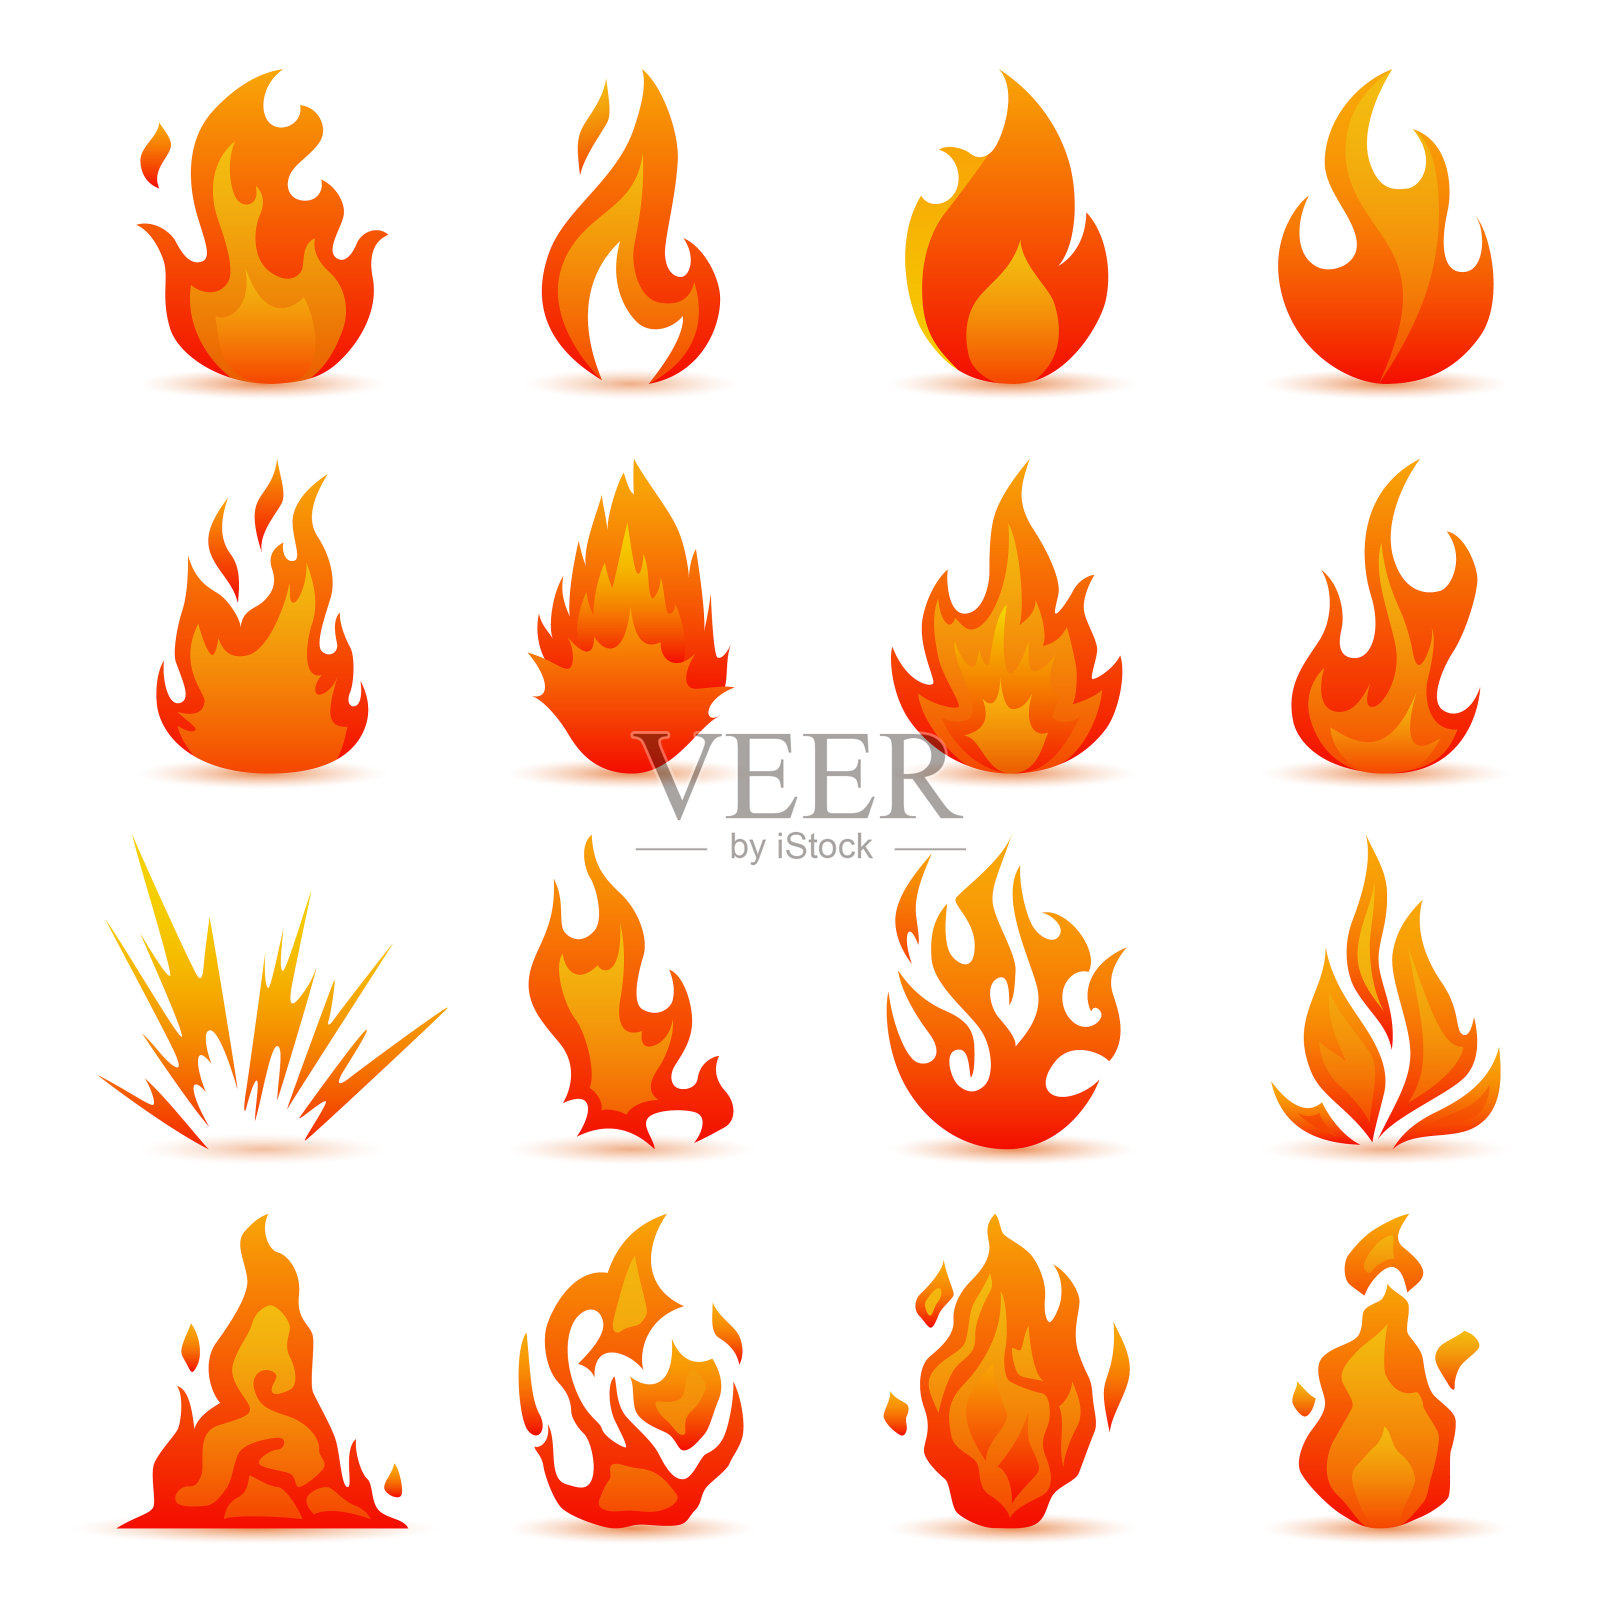 向量火和火焰图标集。彩色火焰在平面风格。简单,图标篝火图标素材